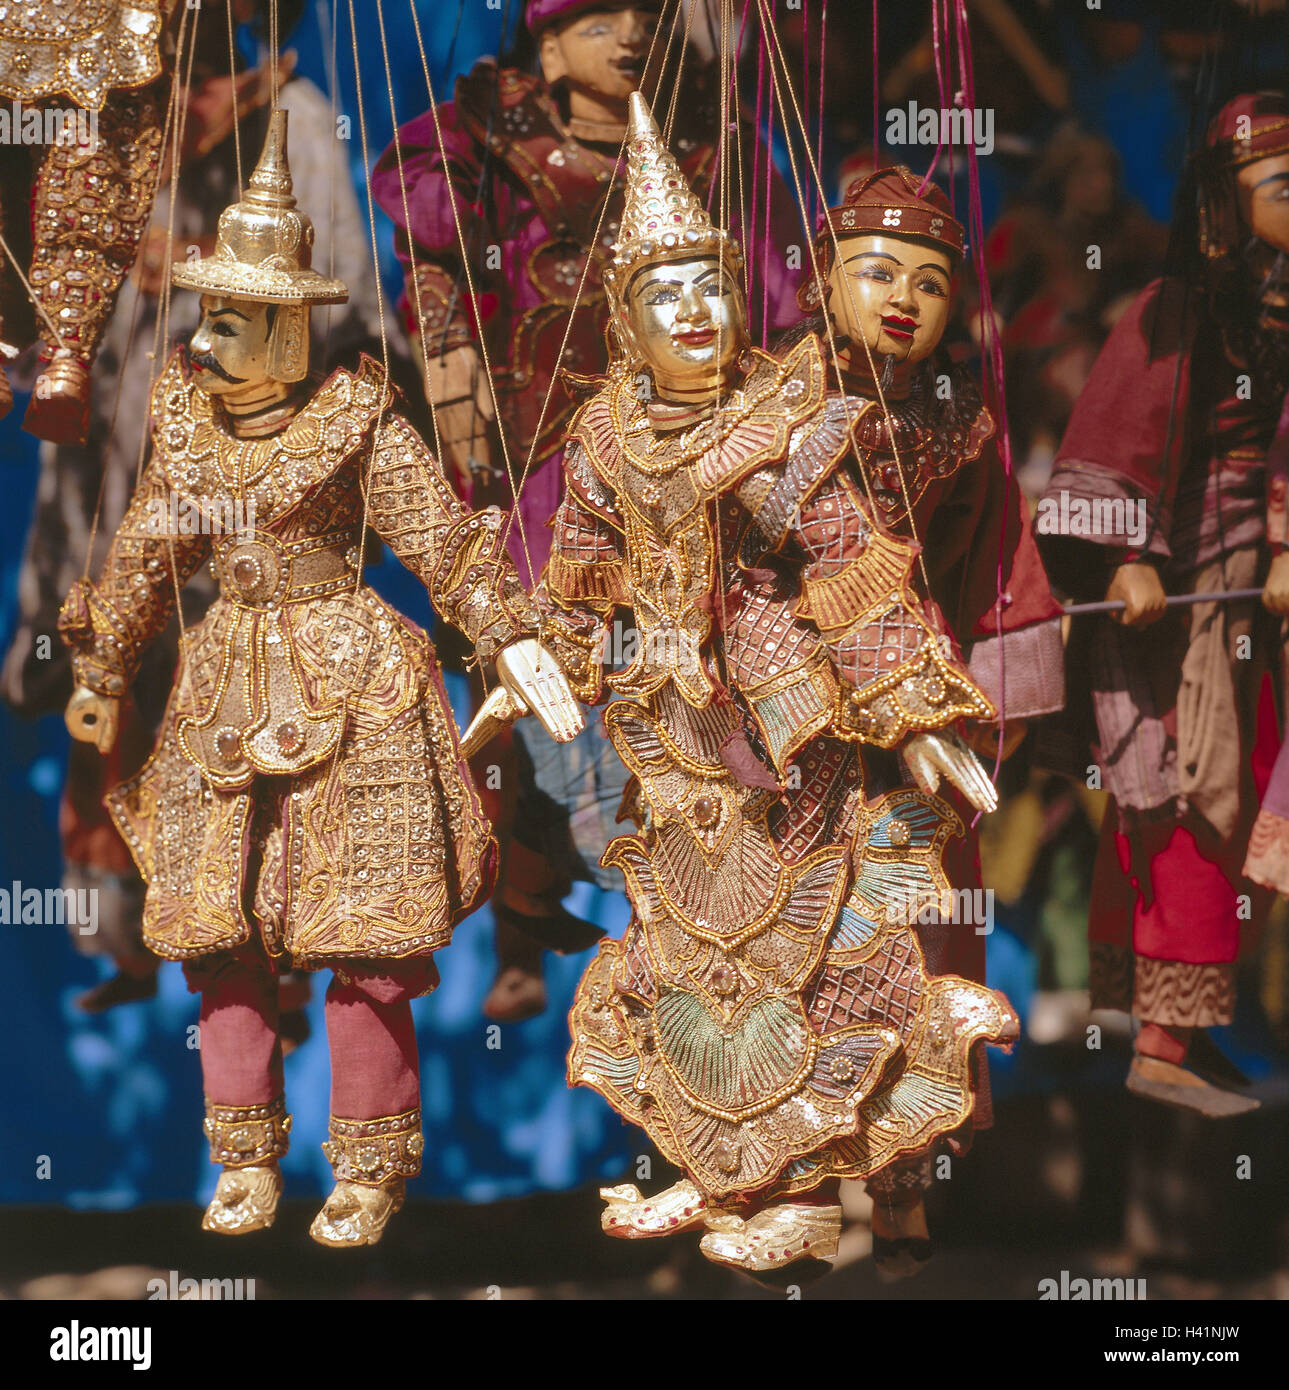 Myanmar, Mandalay, Souvenir Vertrieb, Puppen, Kleidung, Asien, Indochina, Burma, Urlaubserinnerungen, Verkauf, verkaufen, 'Youy-die Pwe', Spielzeug, Puppen, Kleidung, festlich, Folklore Kleidung, prächtig, Trachten, Folklore, Handarbeit, Kunsthandwerk, Handwerk, Stillleben, Produktfotografie Stockfoto